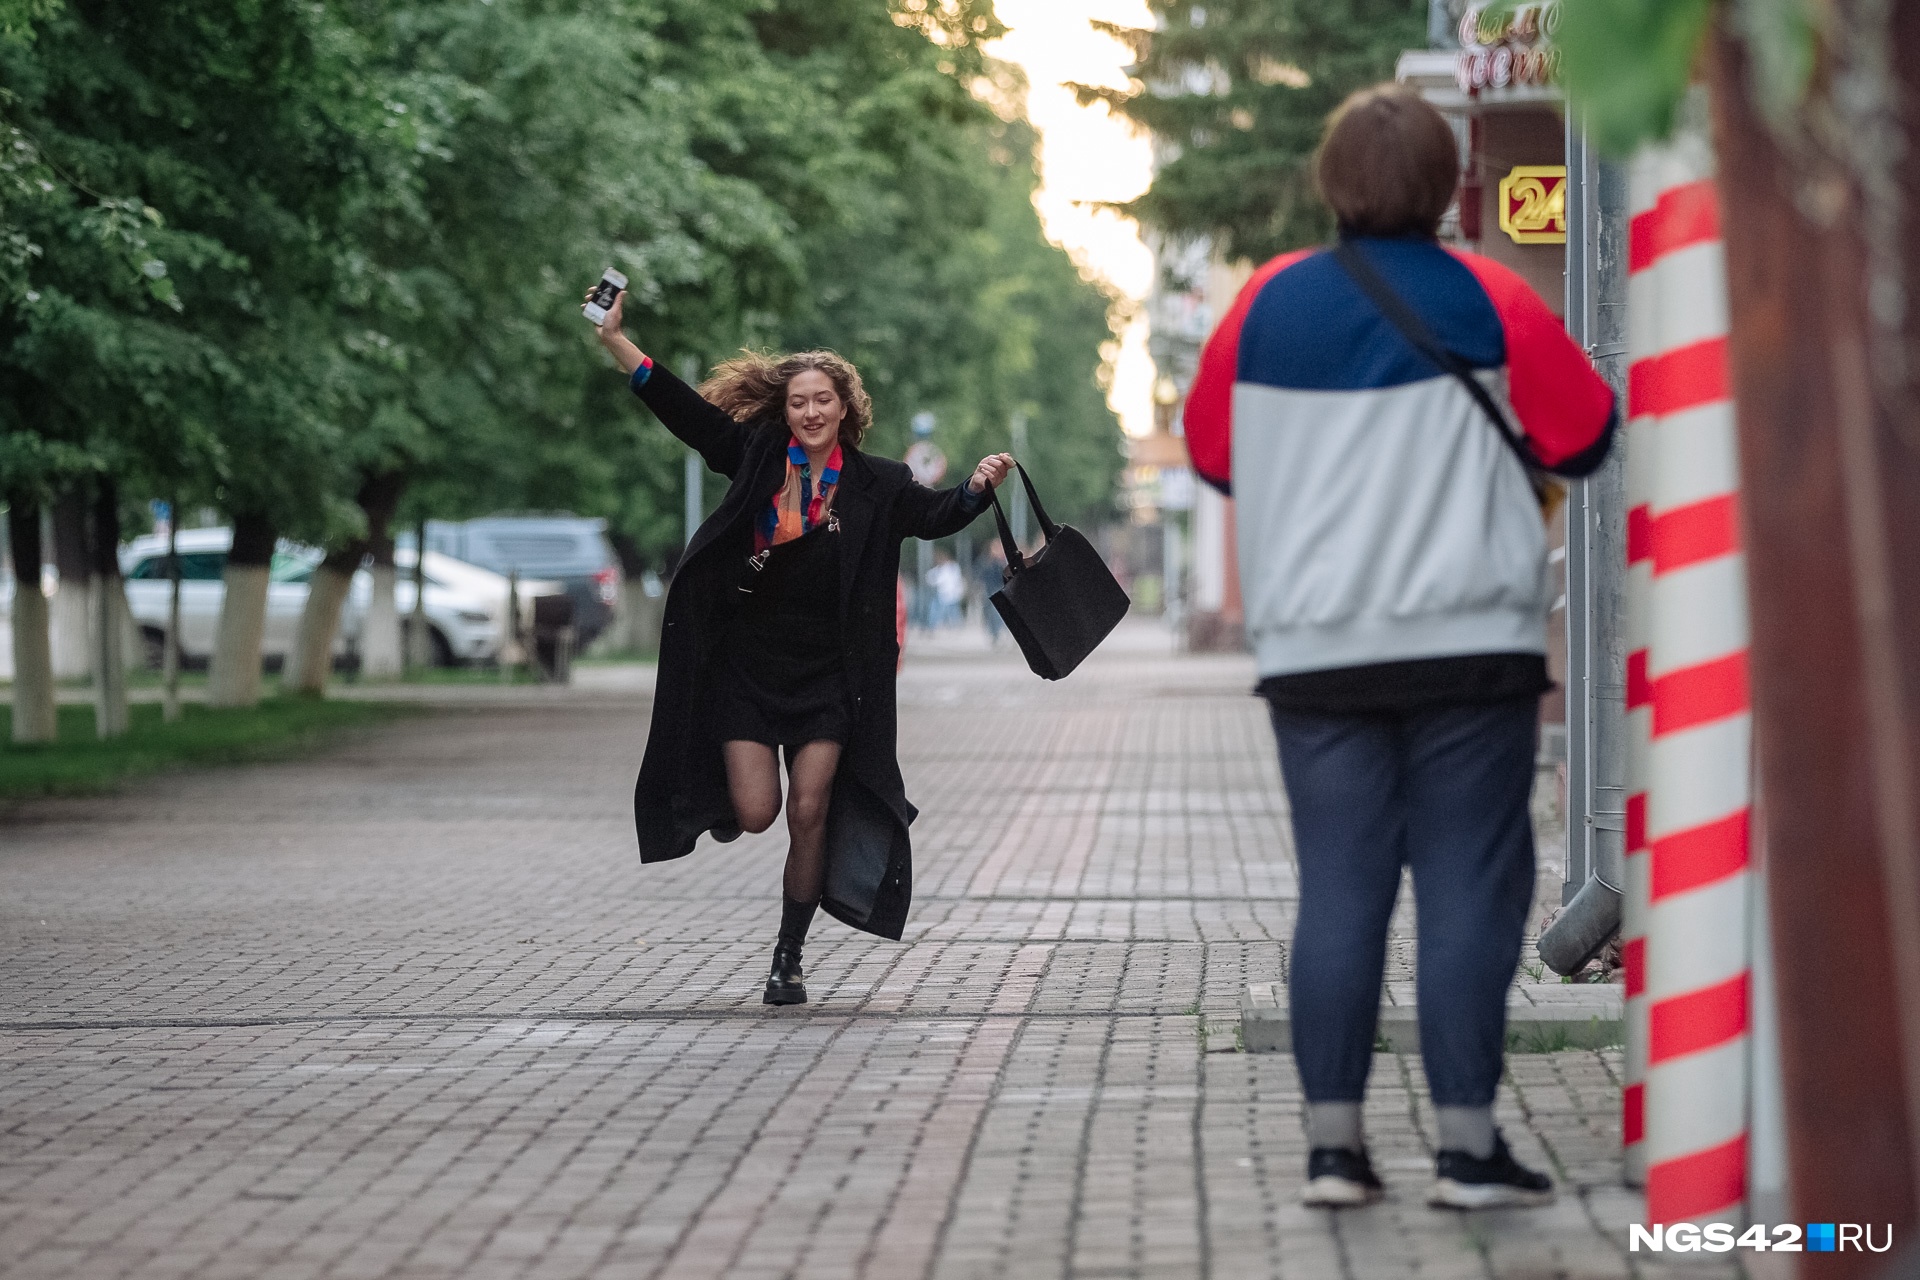 18 июнь 2019. Люди в городе. Фото людей на улице. Выпускница показала. Пьяные выпускники.